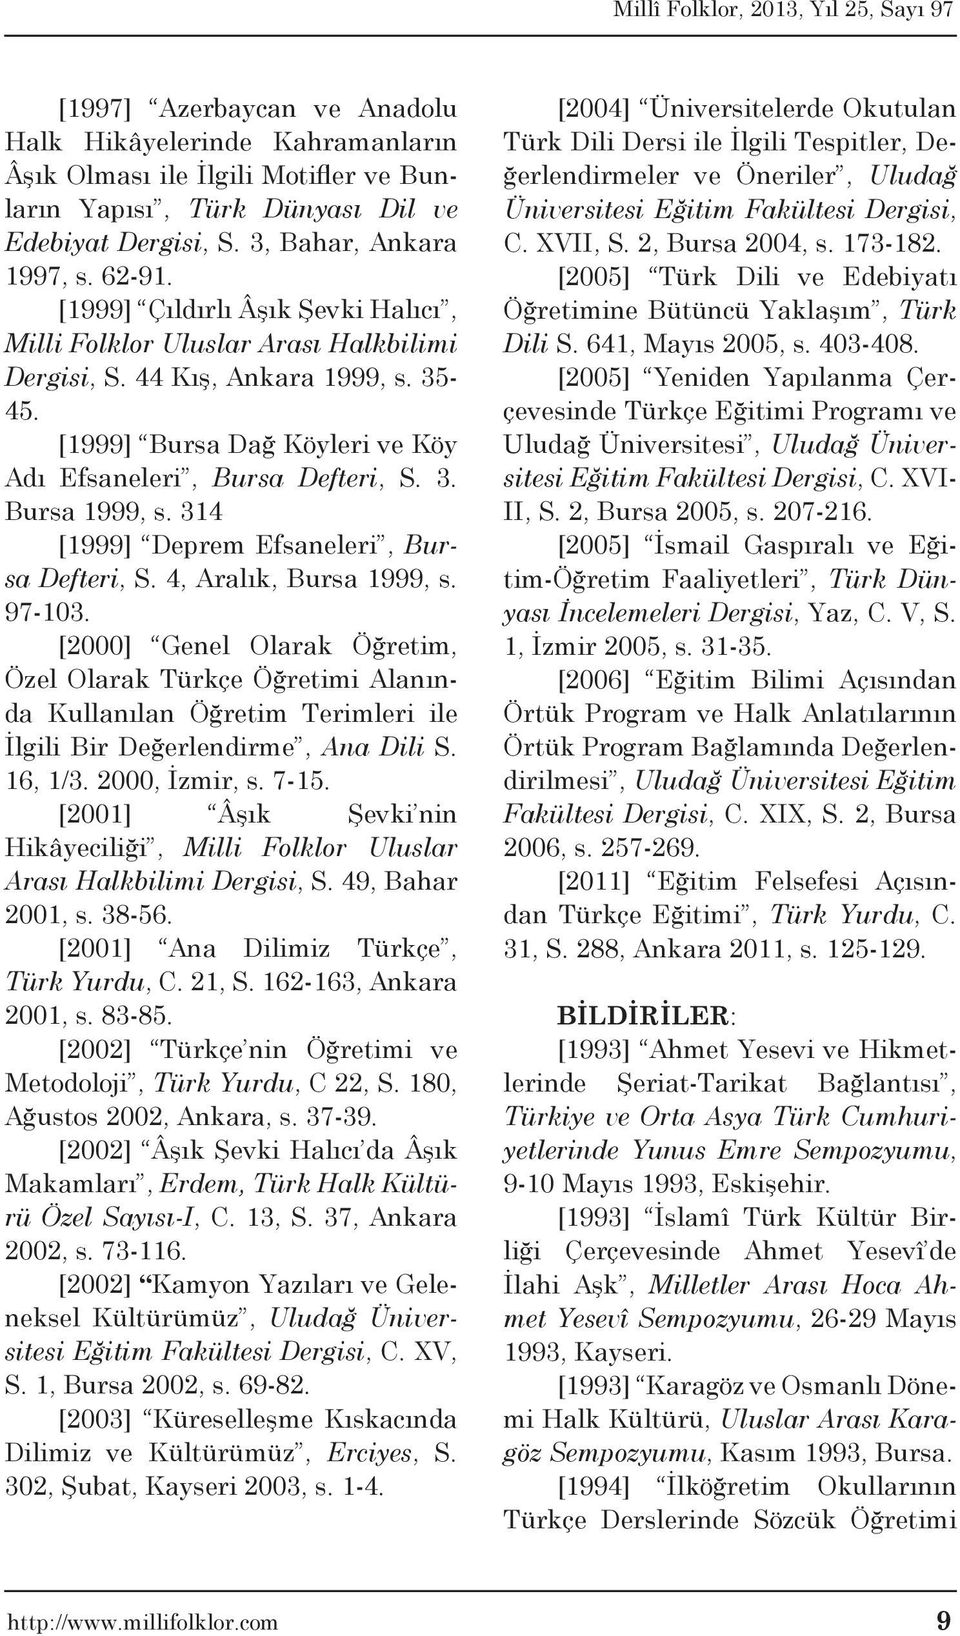 314 [1999] Deprem Efsaneleri, Bursa Defteri, S. 4, Aralık, Bursa 1999, s. 97-103.